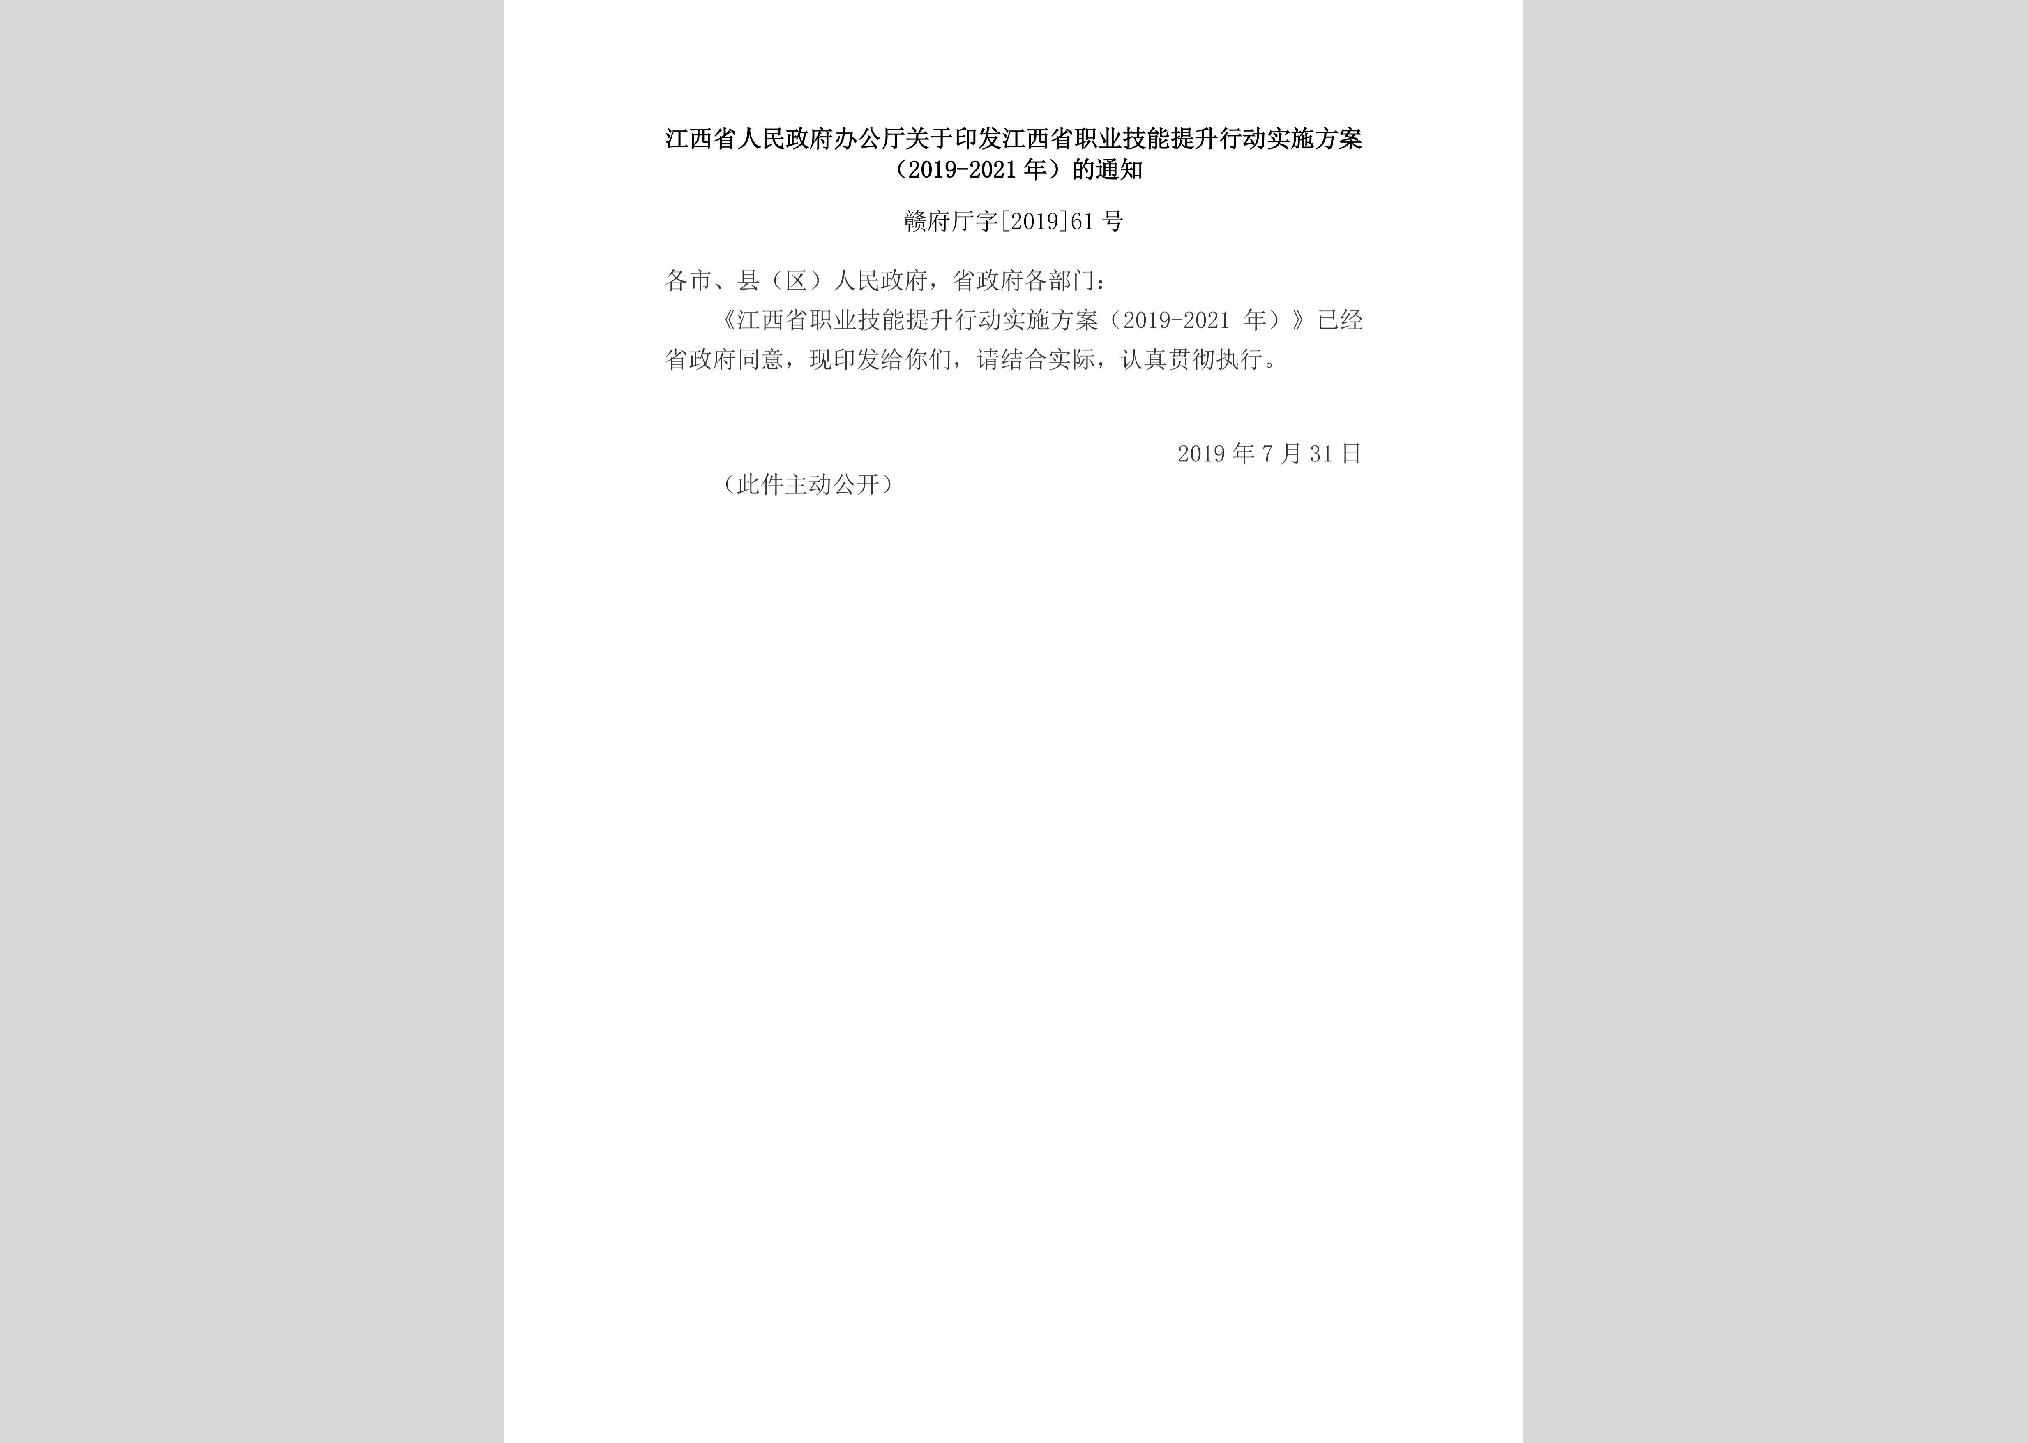 赣府厅字[2019]61号：江西省人民政府办公厅关于印发江西省职业技能提升行动实施方案（2019-2021年）的通知